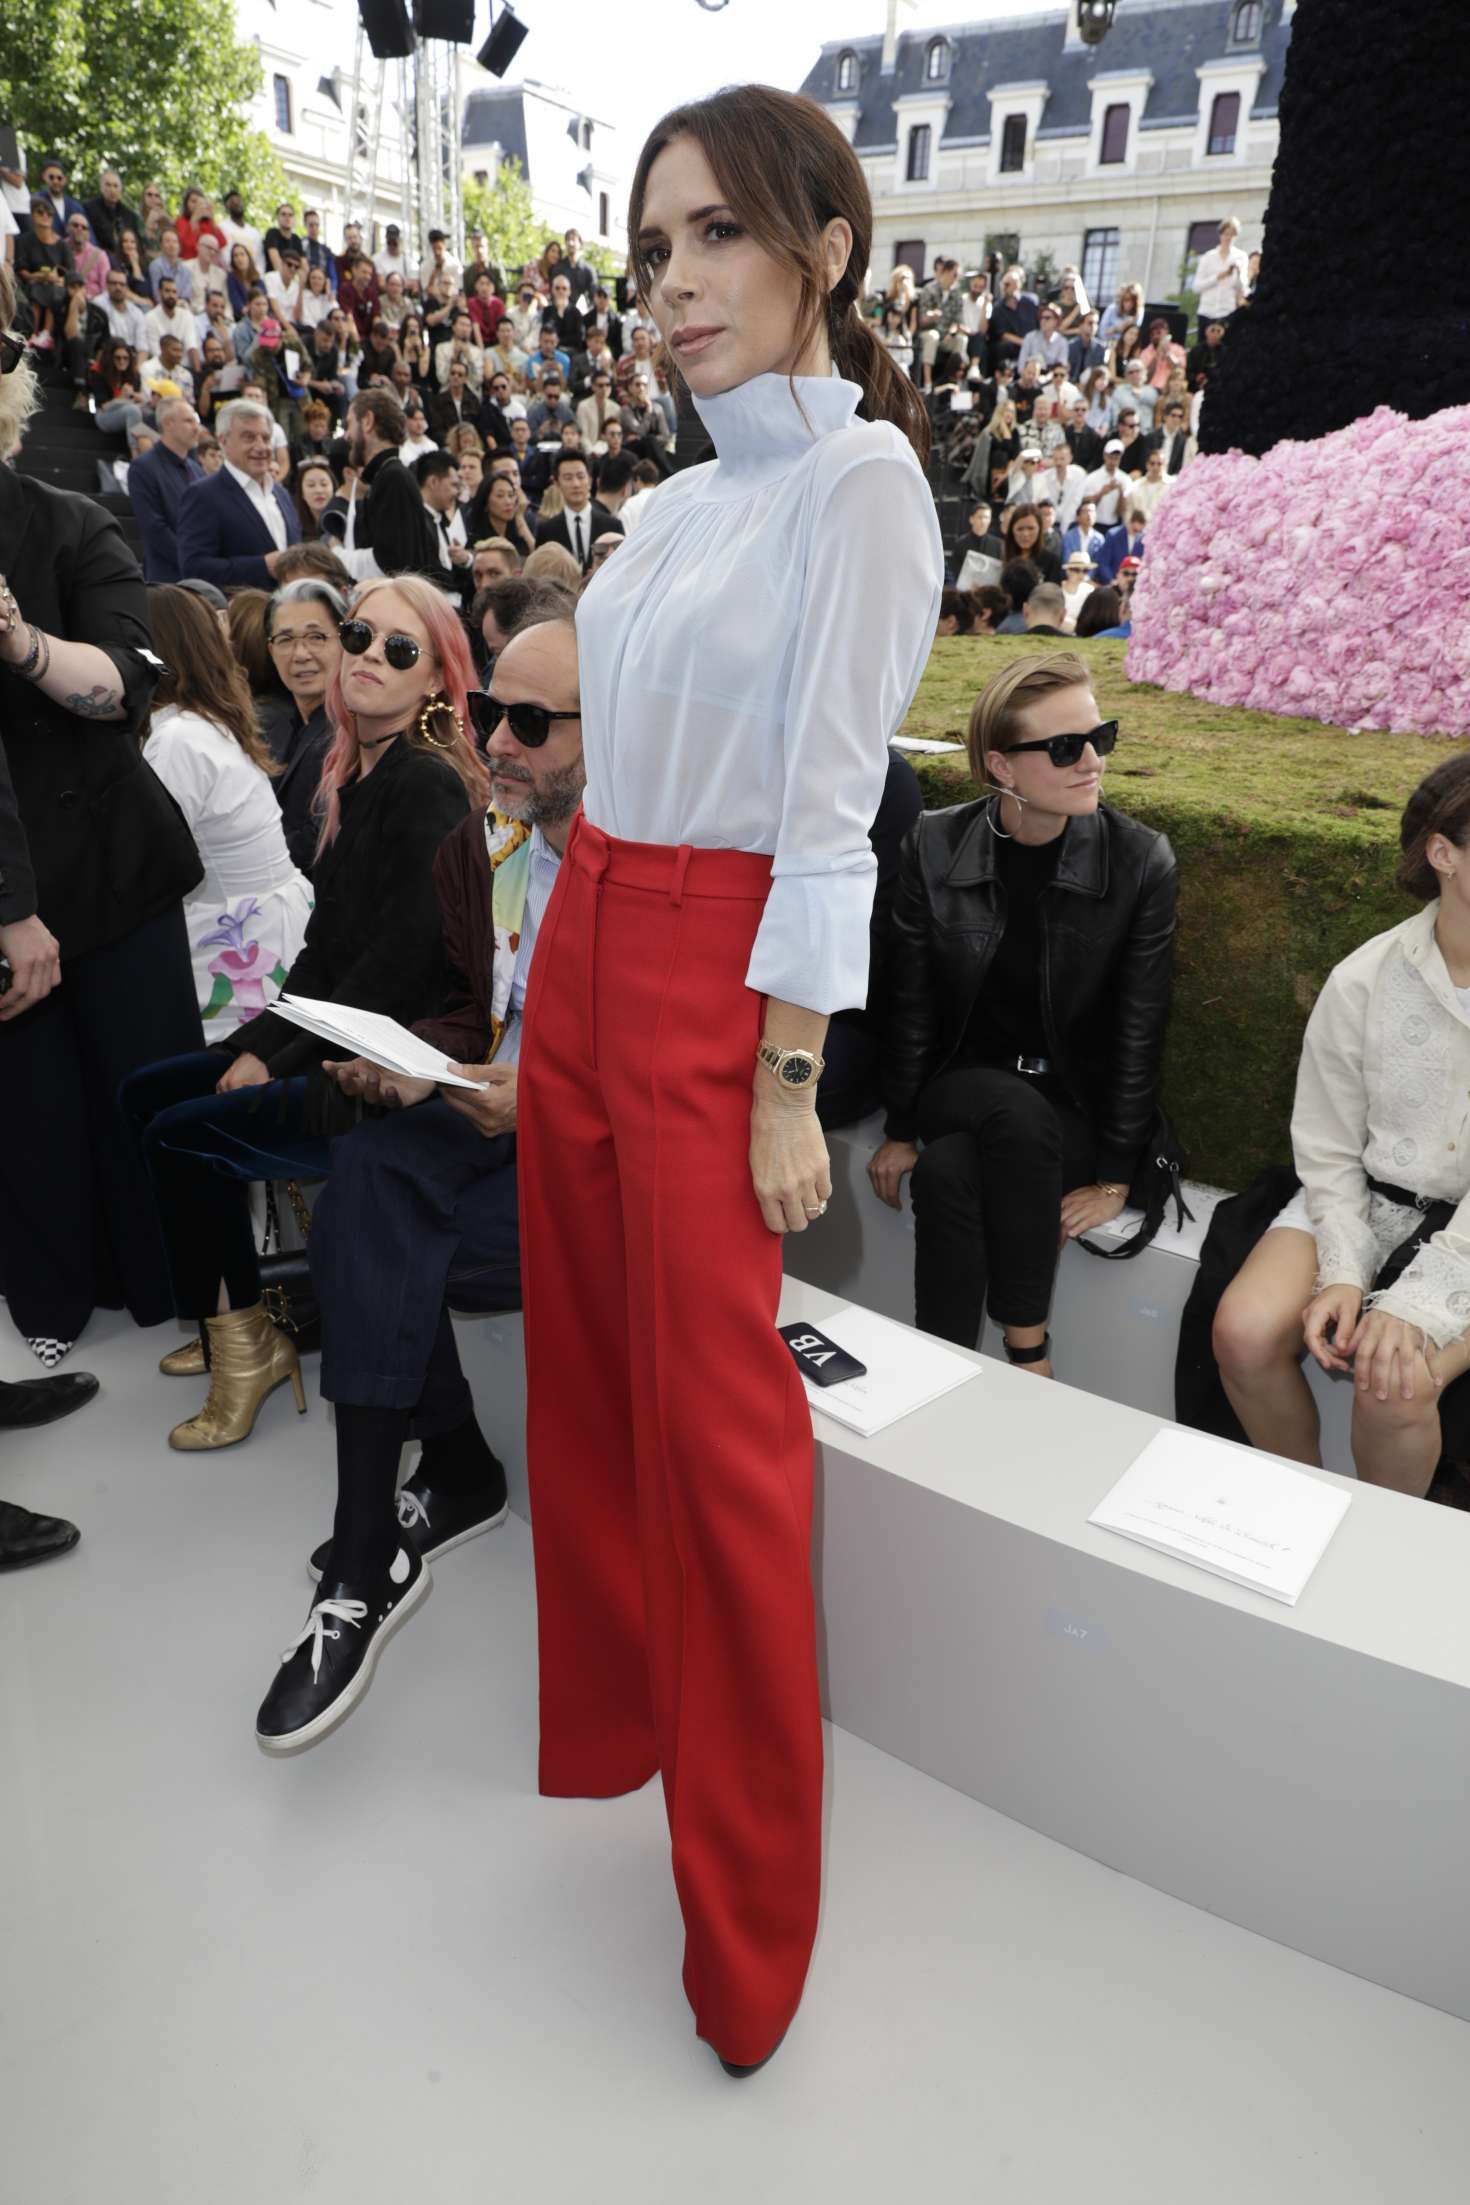 Victoria Beckham â€“ Dior Homme Show SS 2019 at Paris Fashion Week